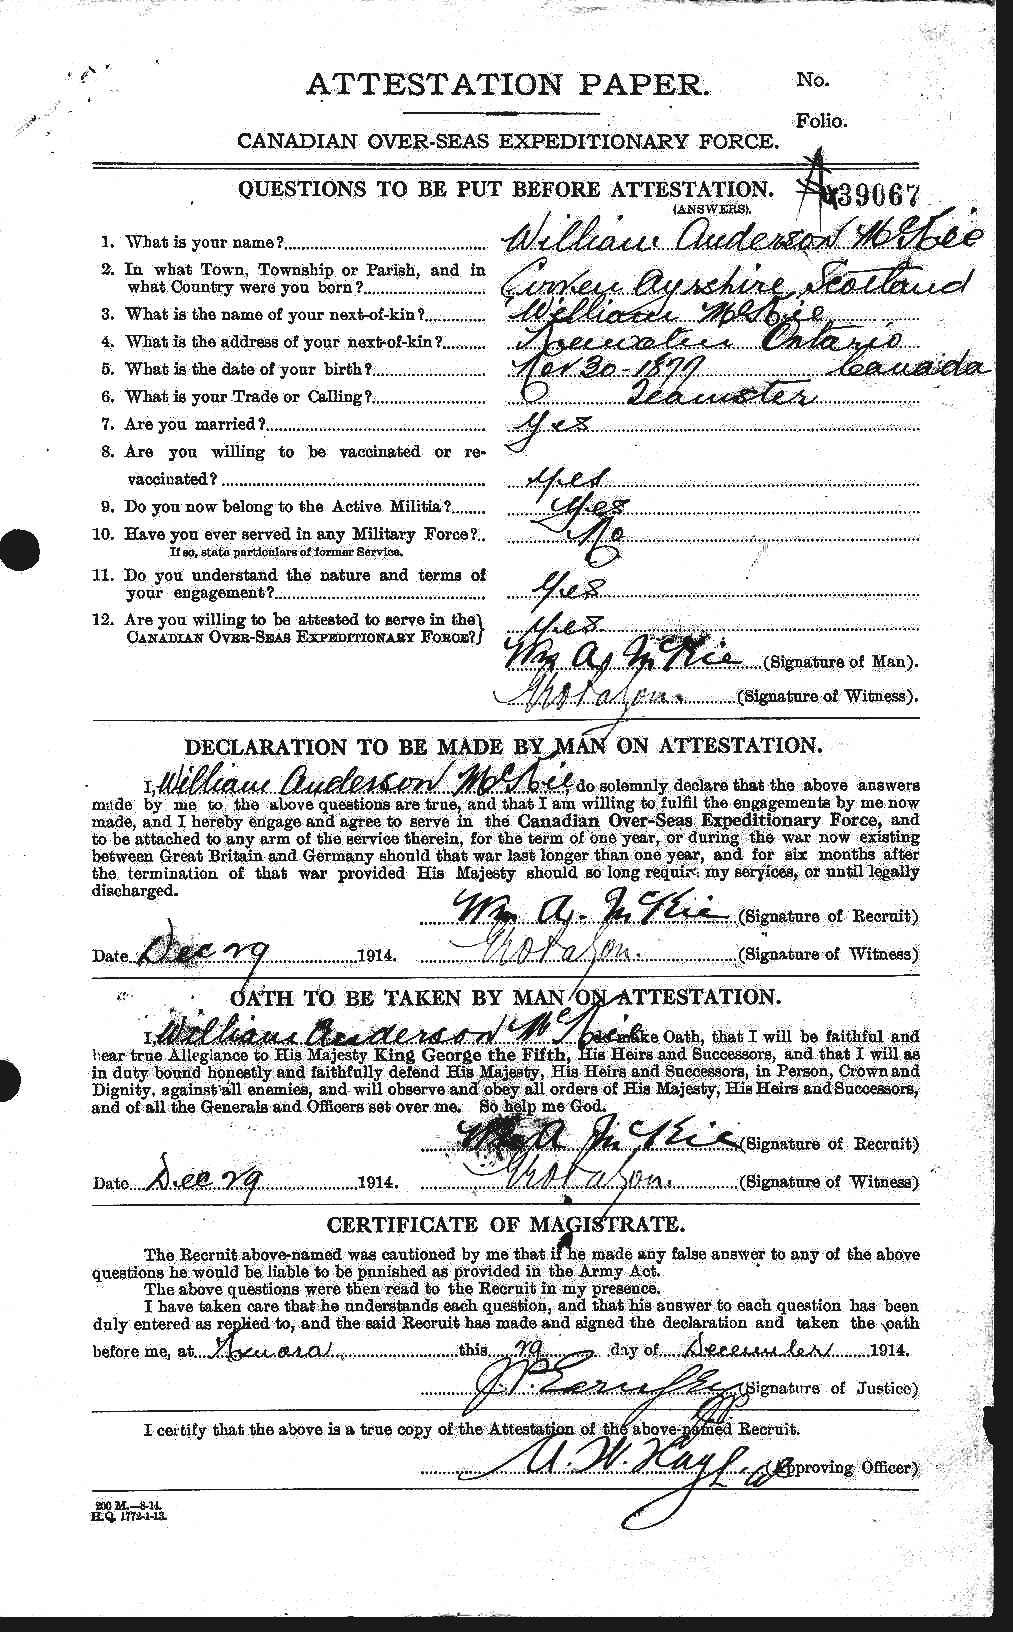 Dossiers du Personnel de la Première Guerre mondiale - CEC 533766a